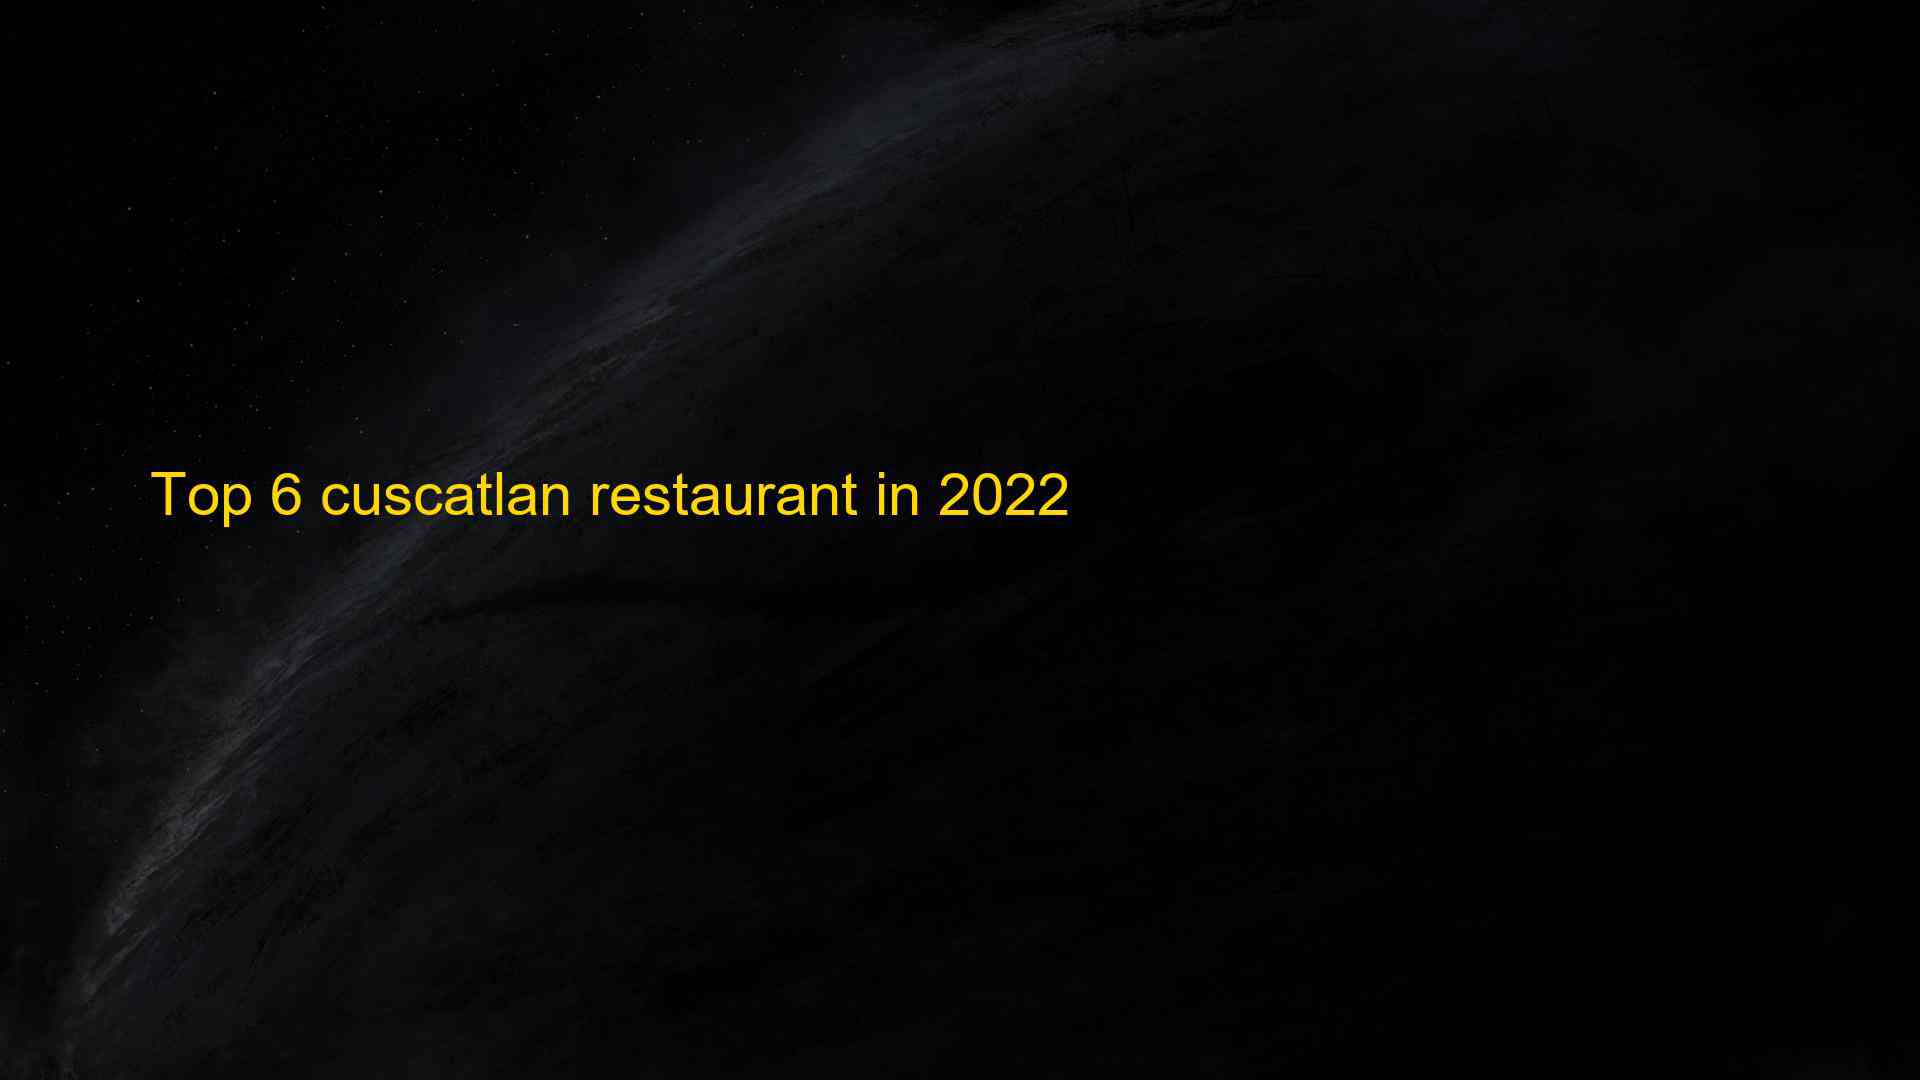 Top 6 cuscatlan restaurant in 2022 1663211604